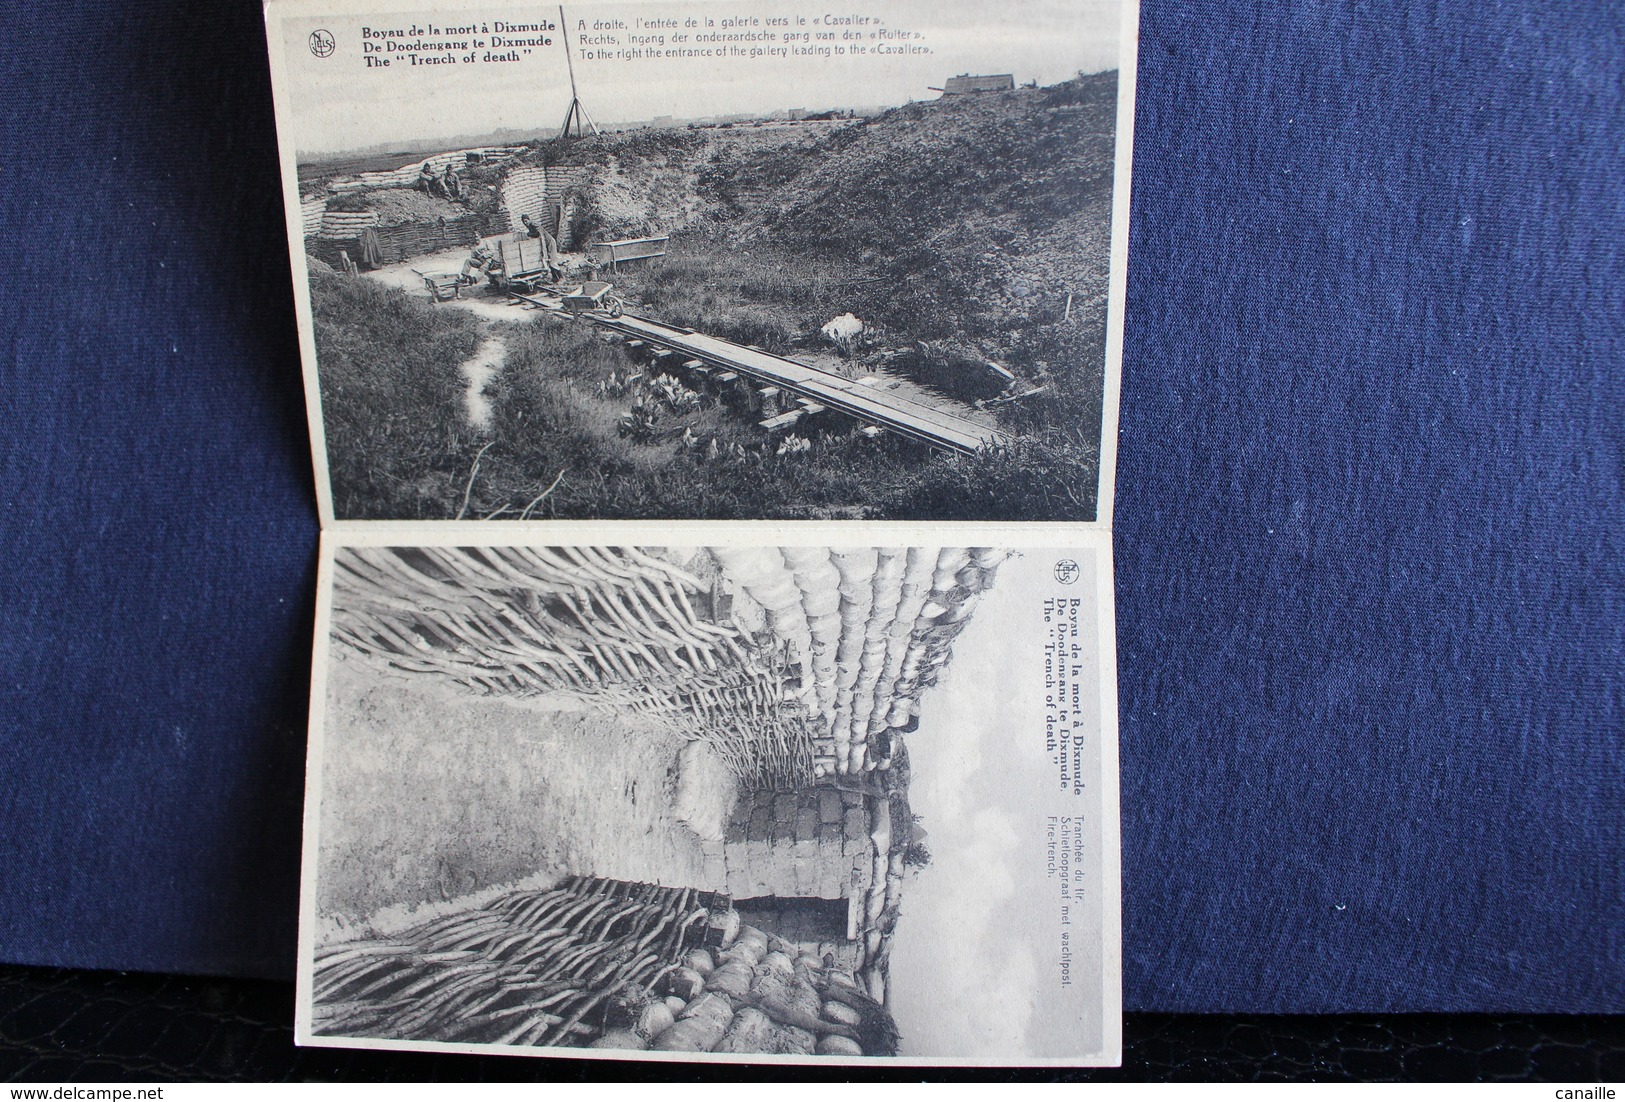 i - 49 / 10 Cartes vues - Boyau de la Mort à Dixmude - De Doodengang te Dixmude / Guerre -1914-18